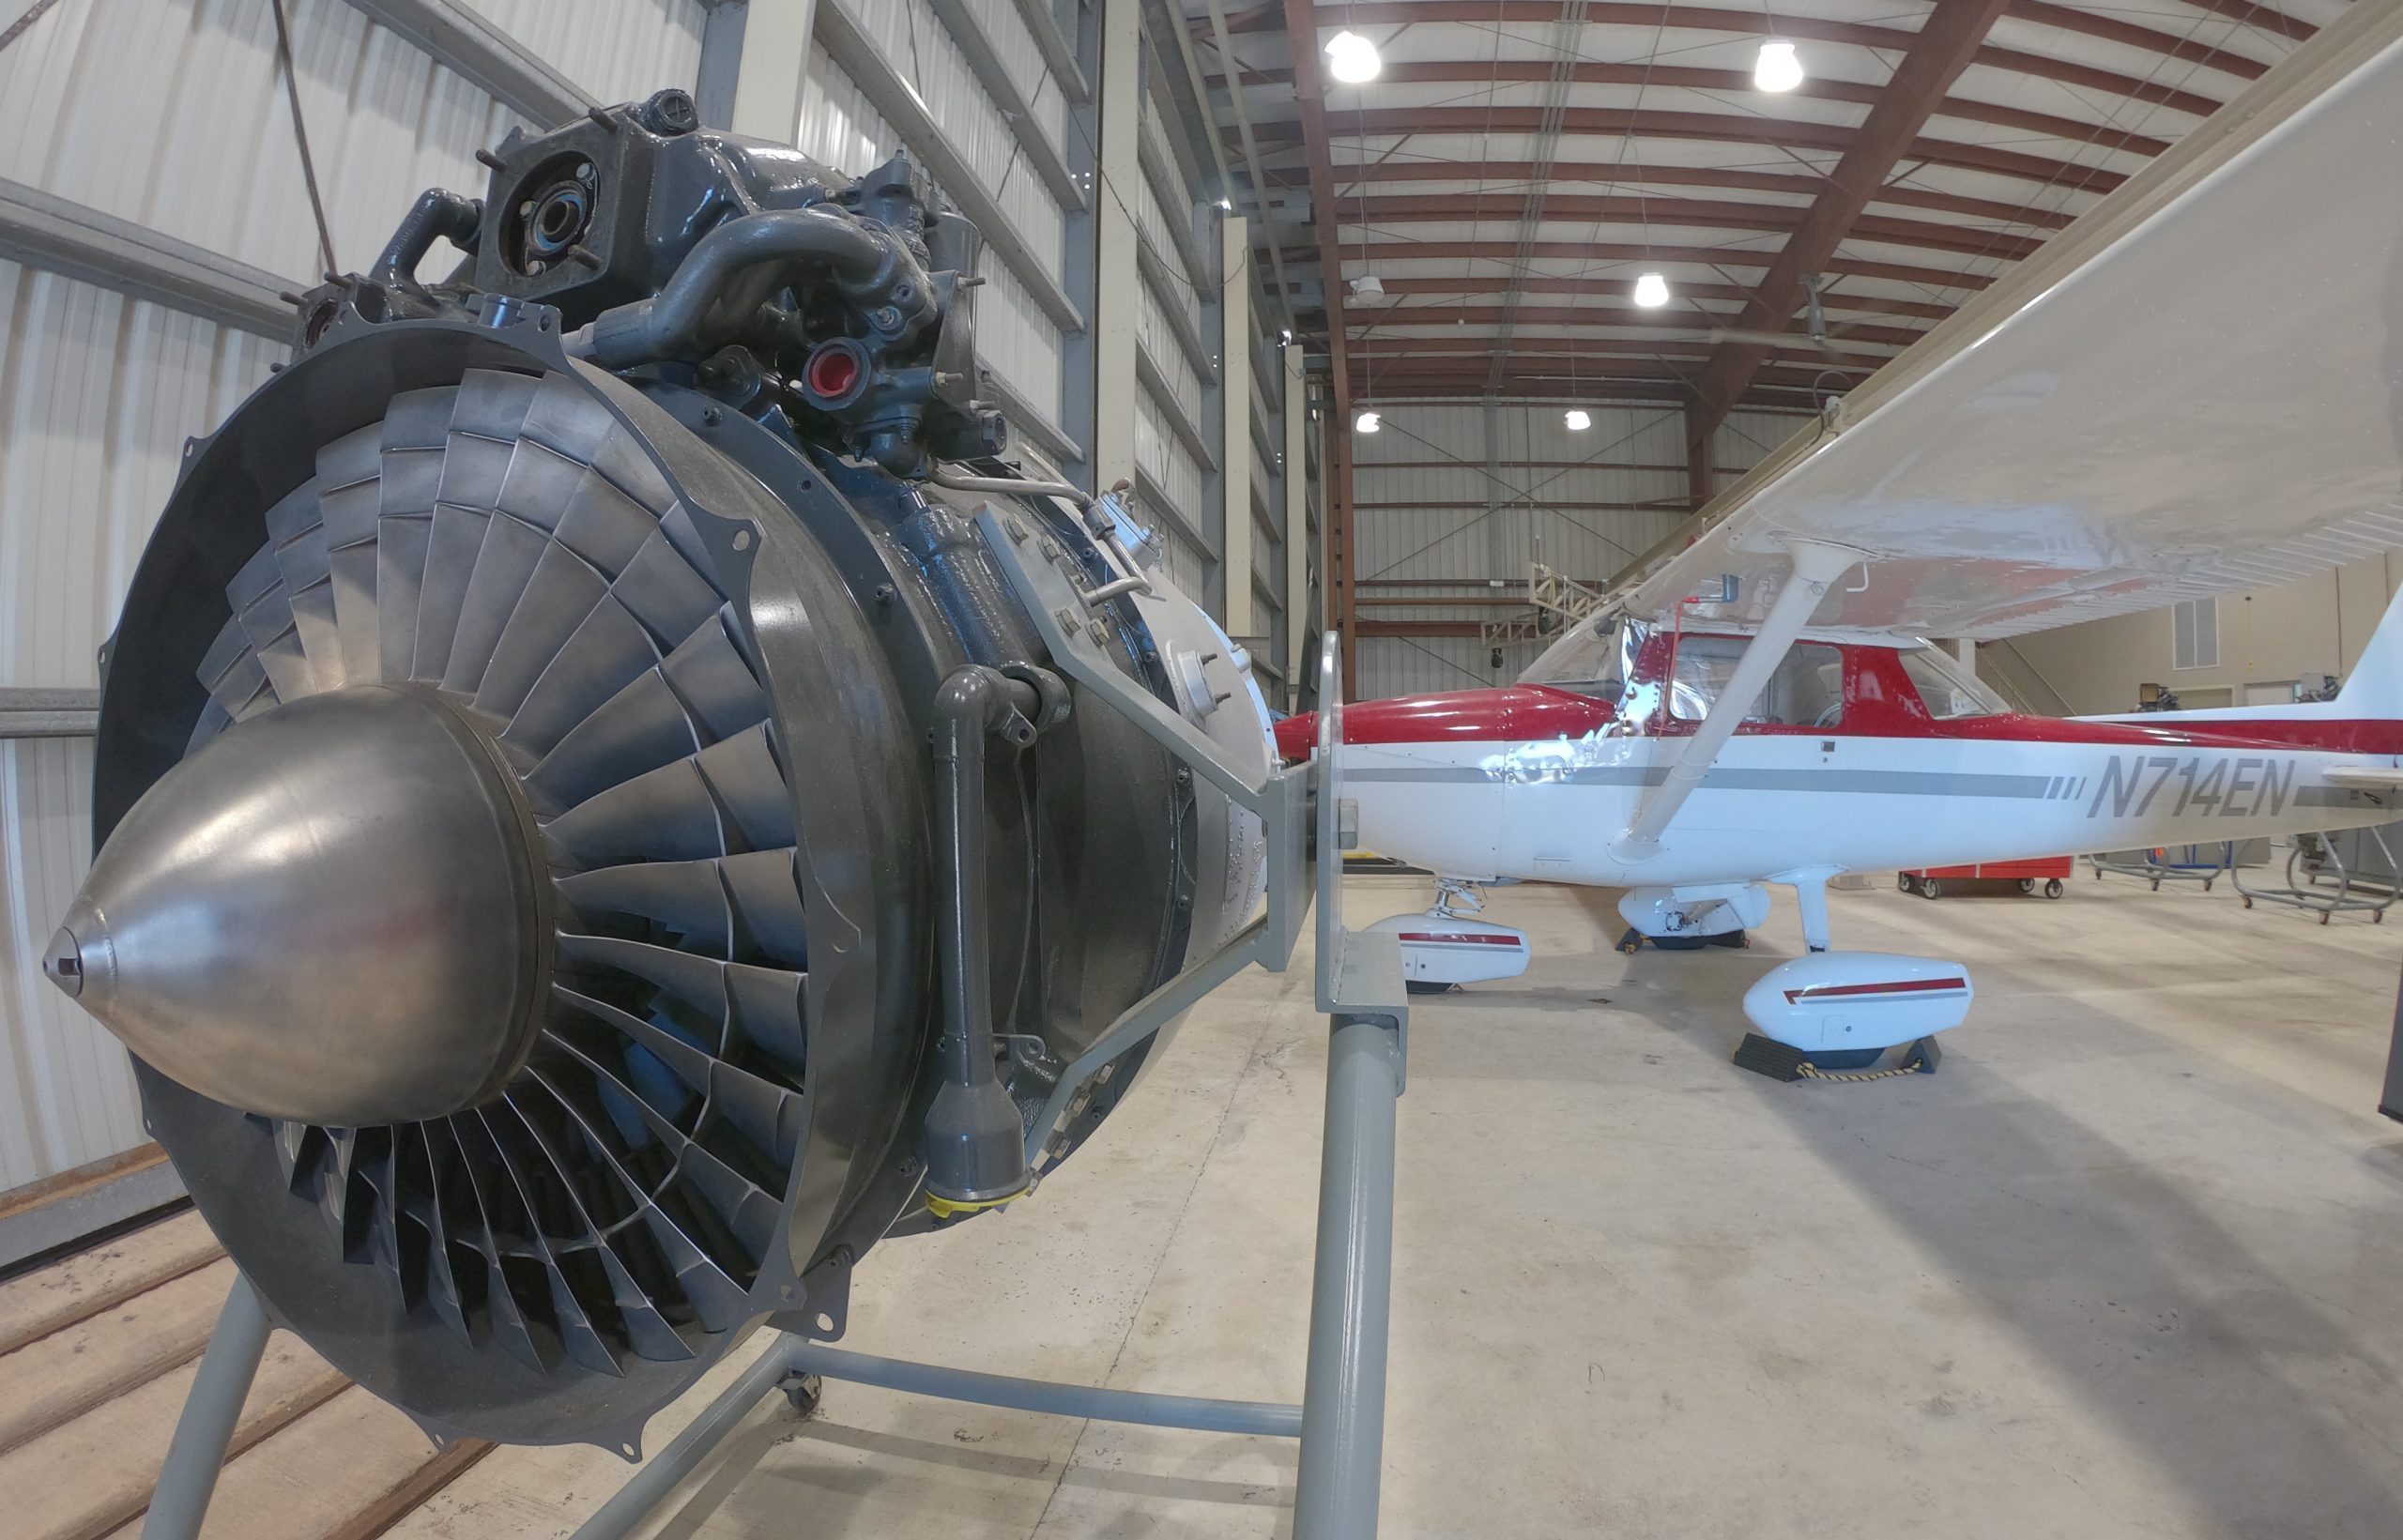 Foto de una turbina de avión montada en un armazón. La turbina está ubicada dentro de un hangar.